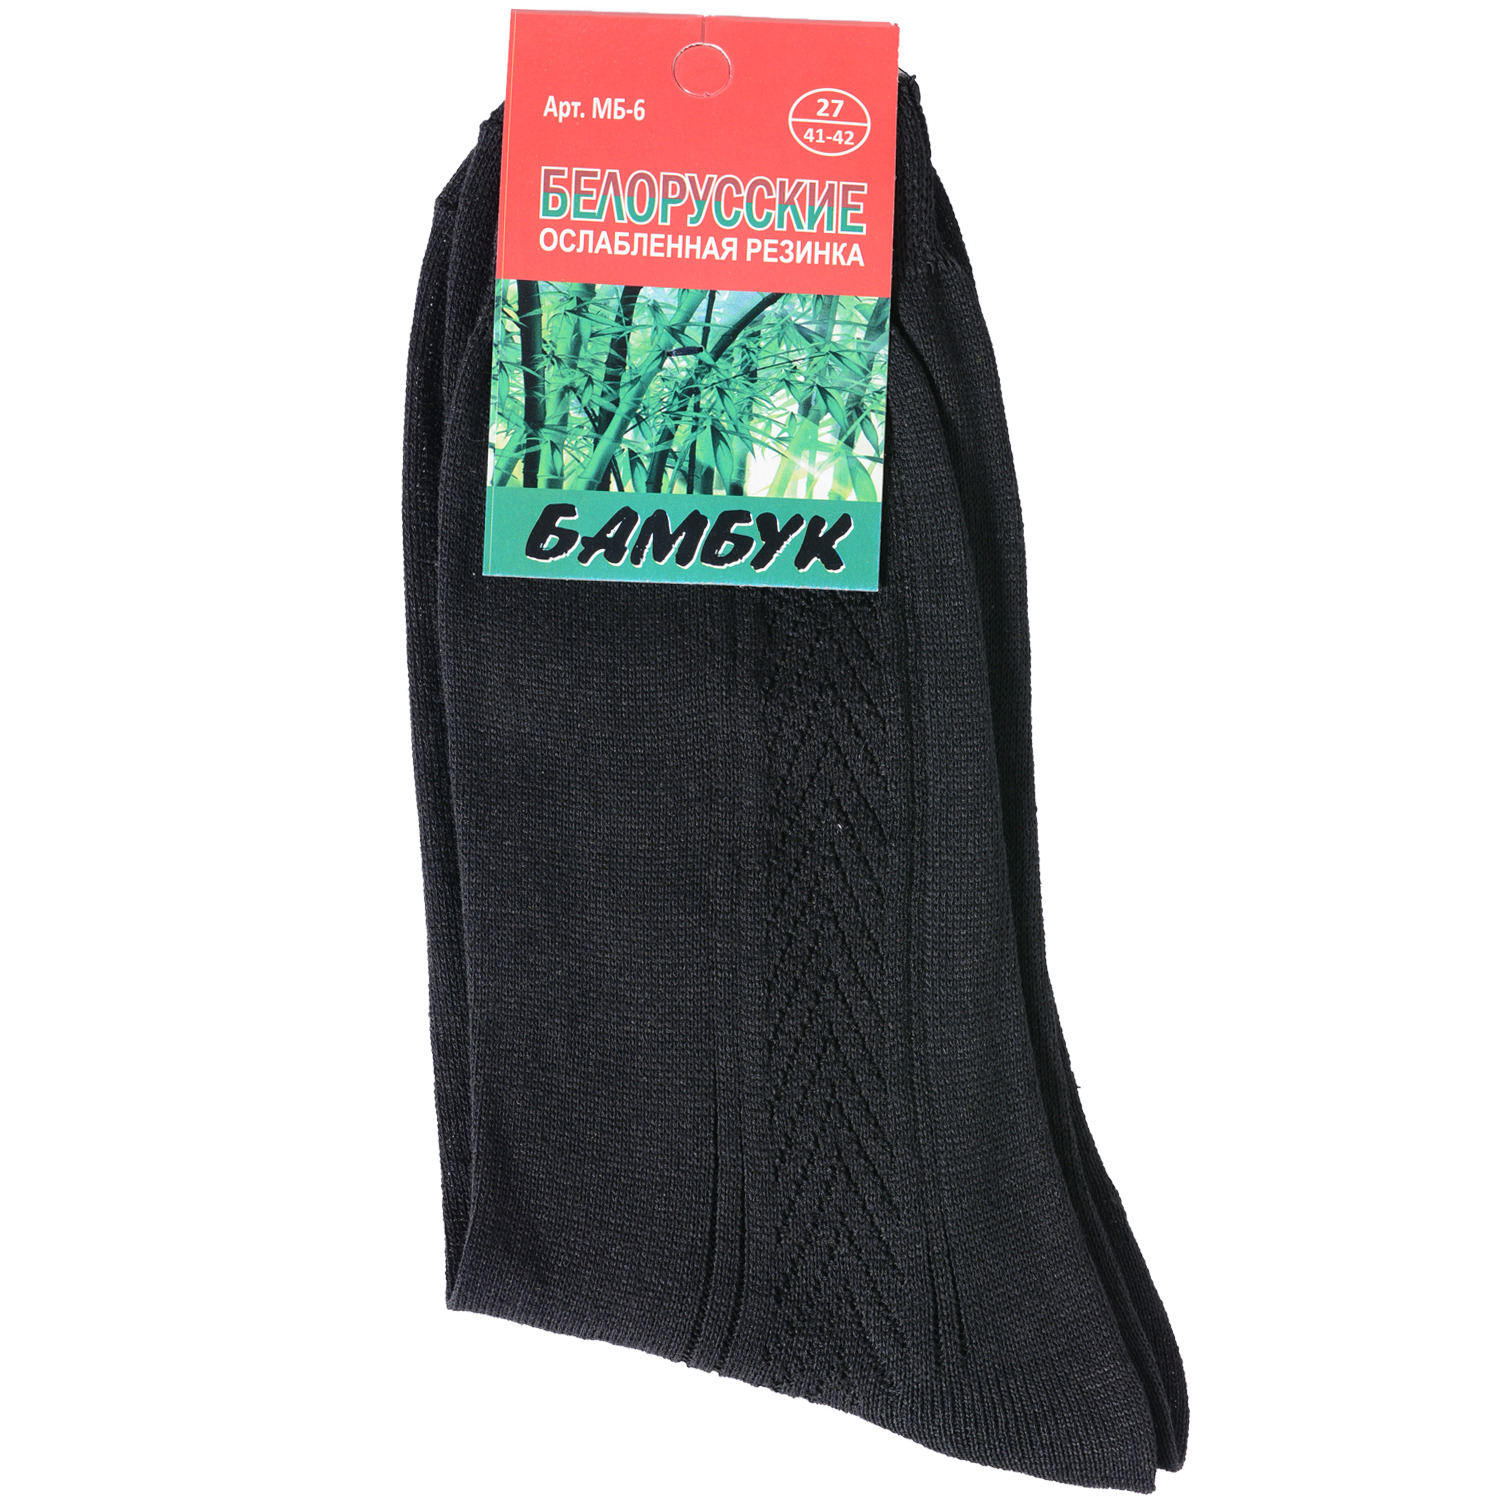 Мужские носки с ослабленной резинкой Белорусские (бамбук)